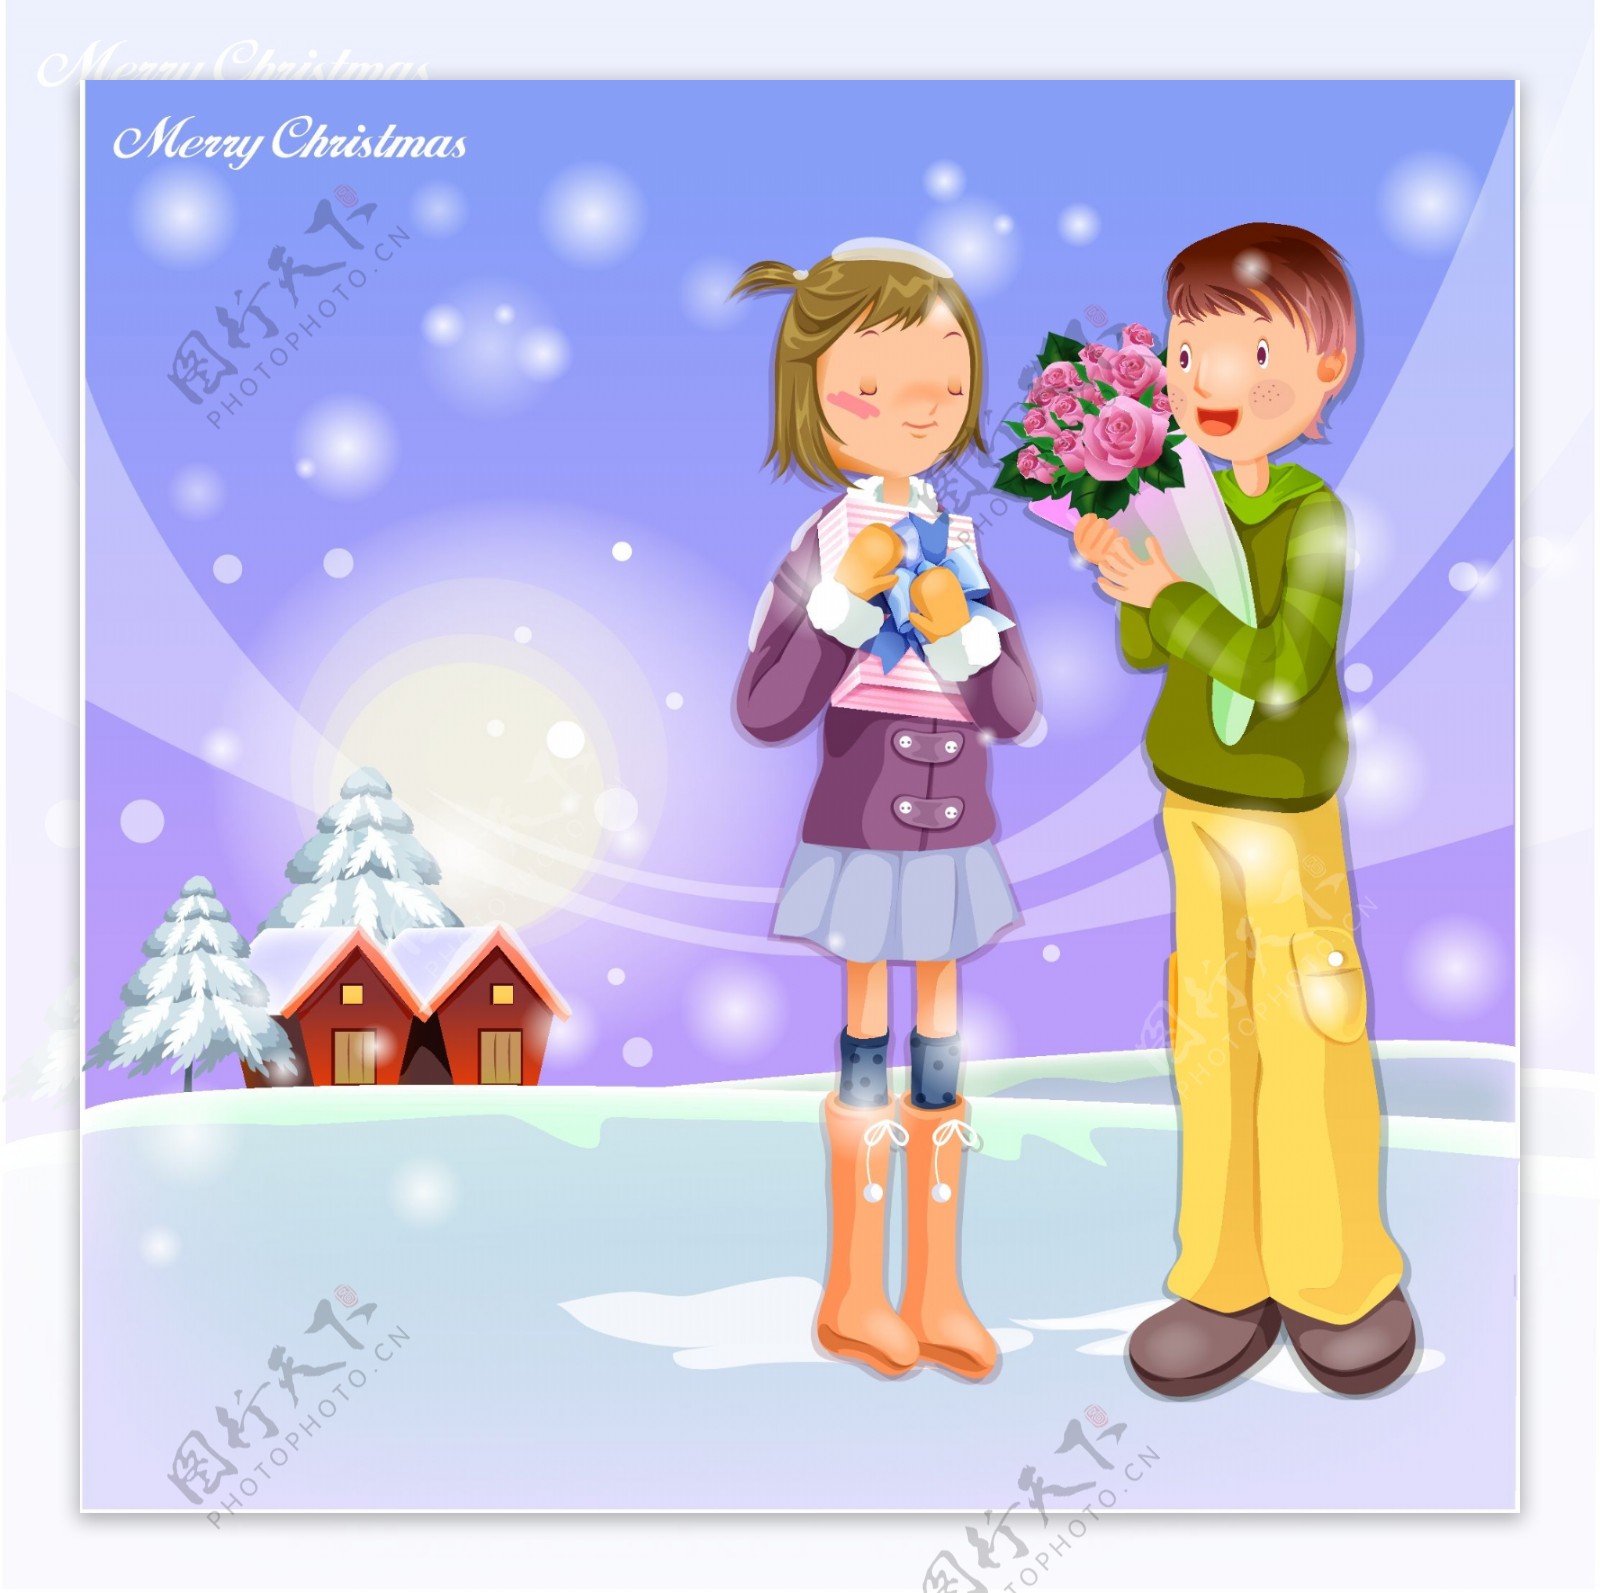 矢量卡通人物男女情侣浪漫雪景冬天圣诞节快乐幸福树木房子雪人路灯可爱情人用餐开心城市剪影矢量素材